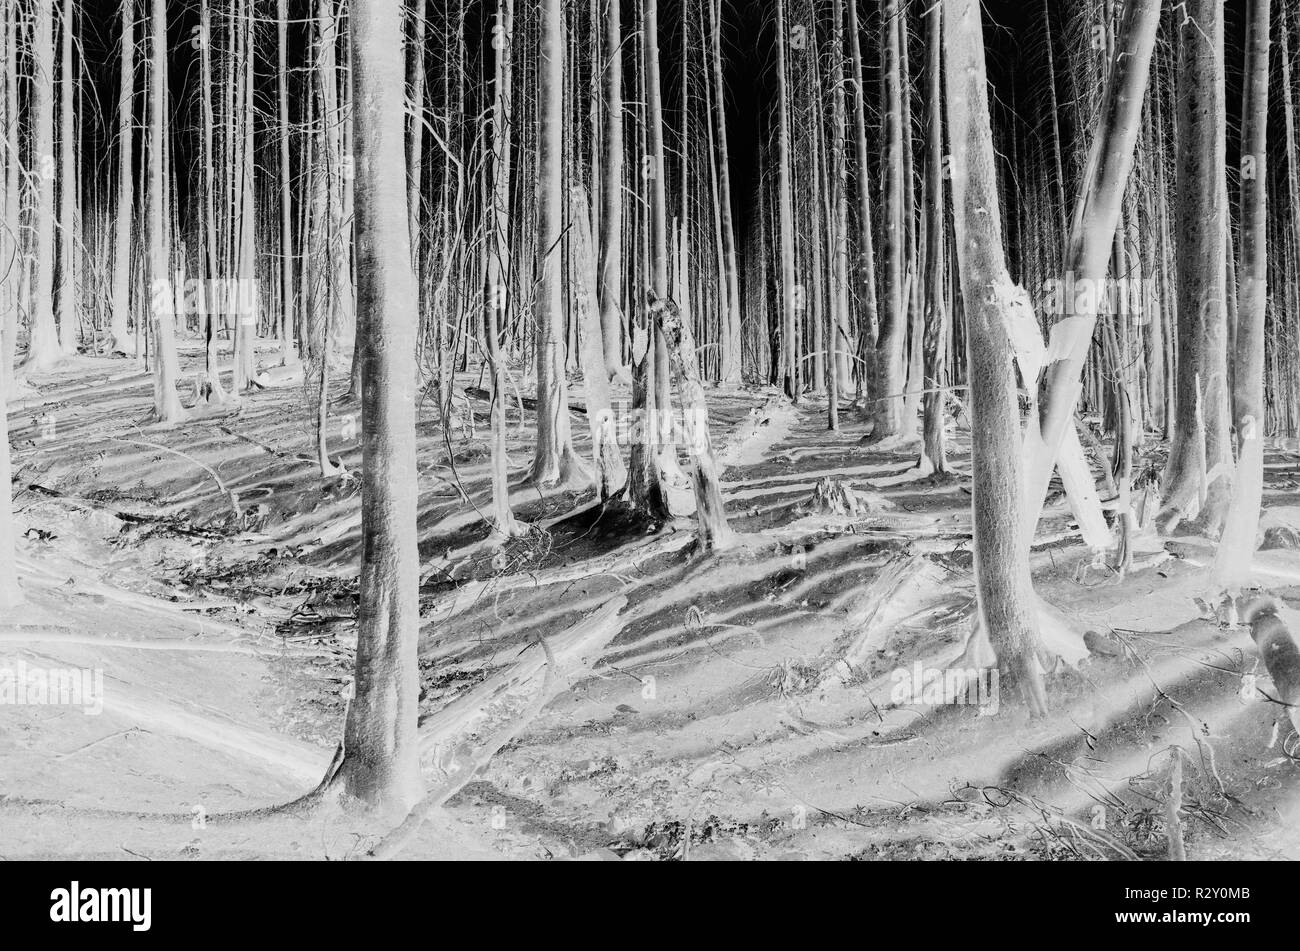 Le noir et blanc image inversée de la crête des Scandinaves feu de forêt arbres endommagés, près de Mount Rainier National Park Banque D'Images